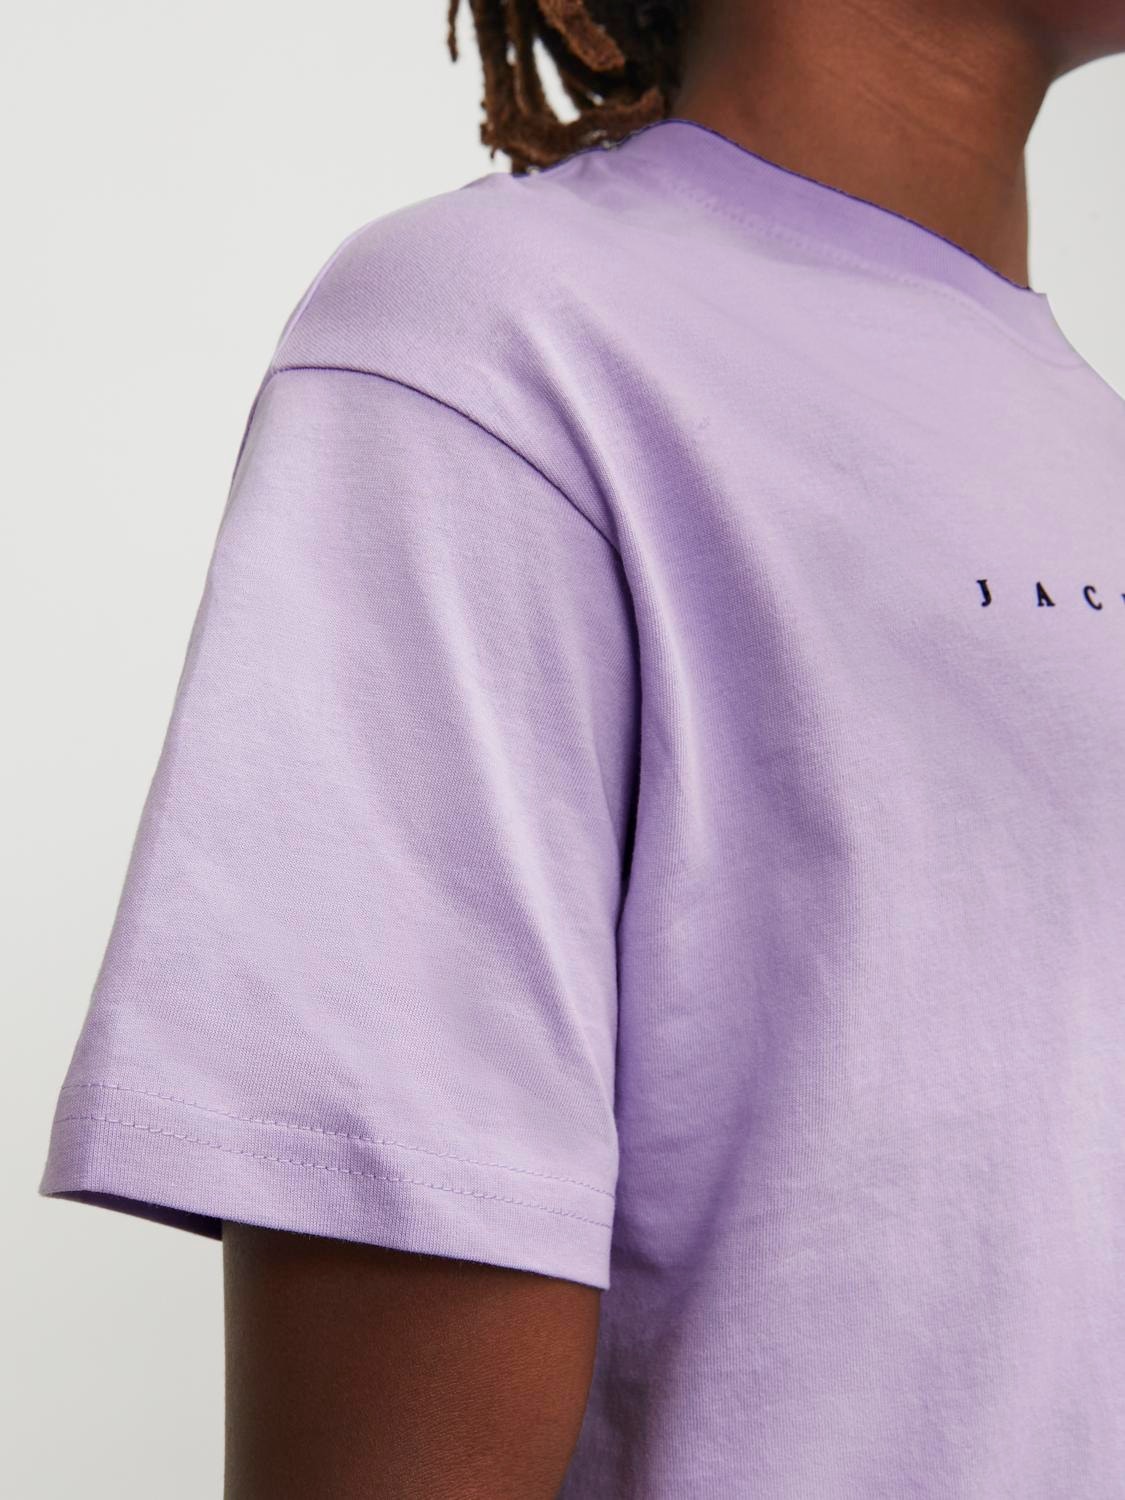 Jack & Jones Logotipas Marškinėliai For boys -Purple Rose - 12237435